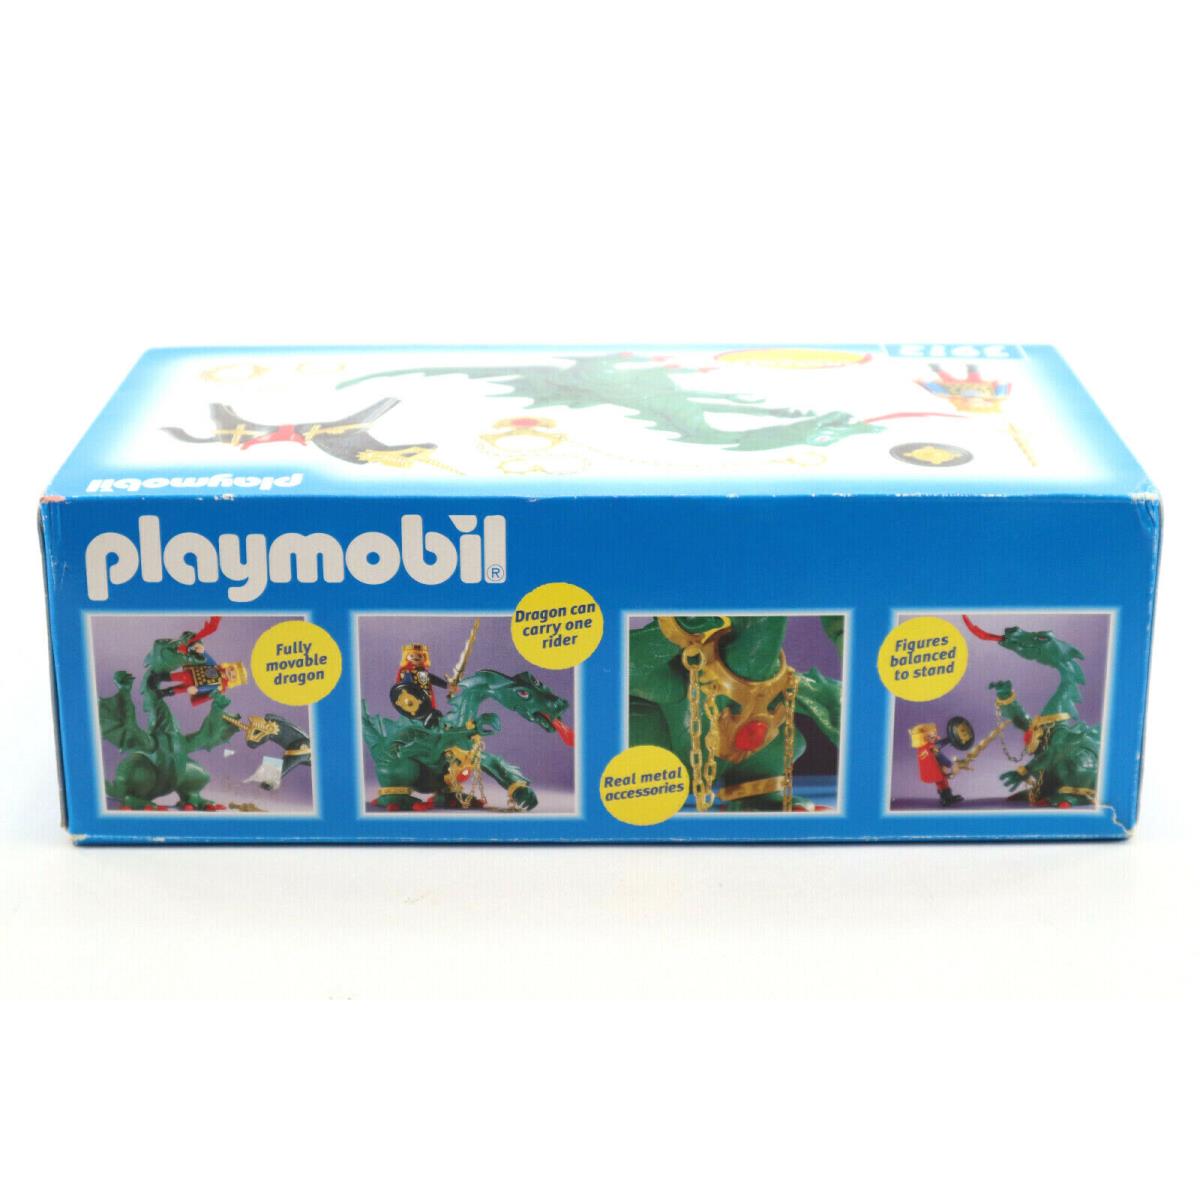 Playmobil toy 